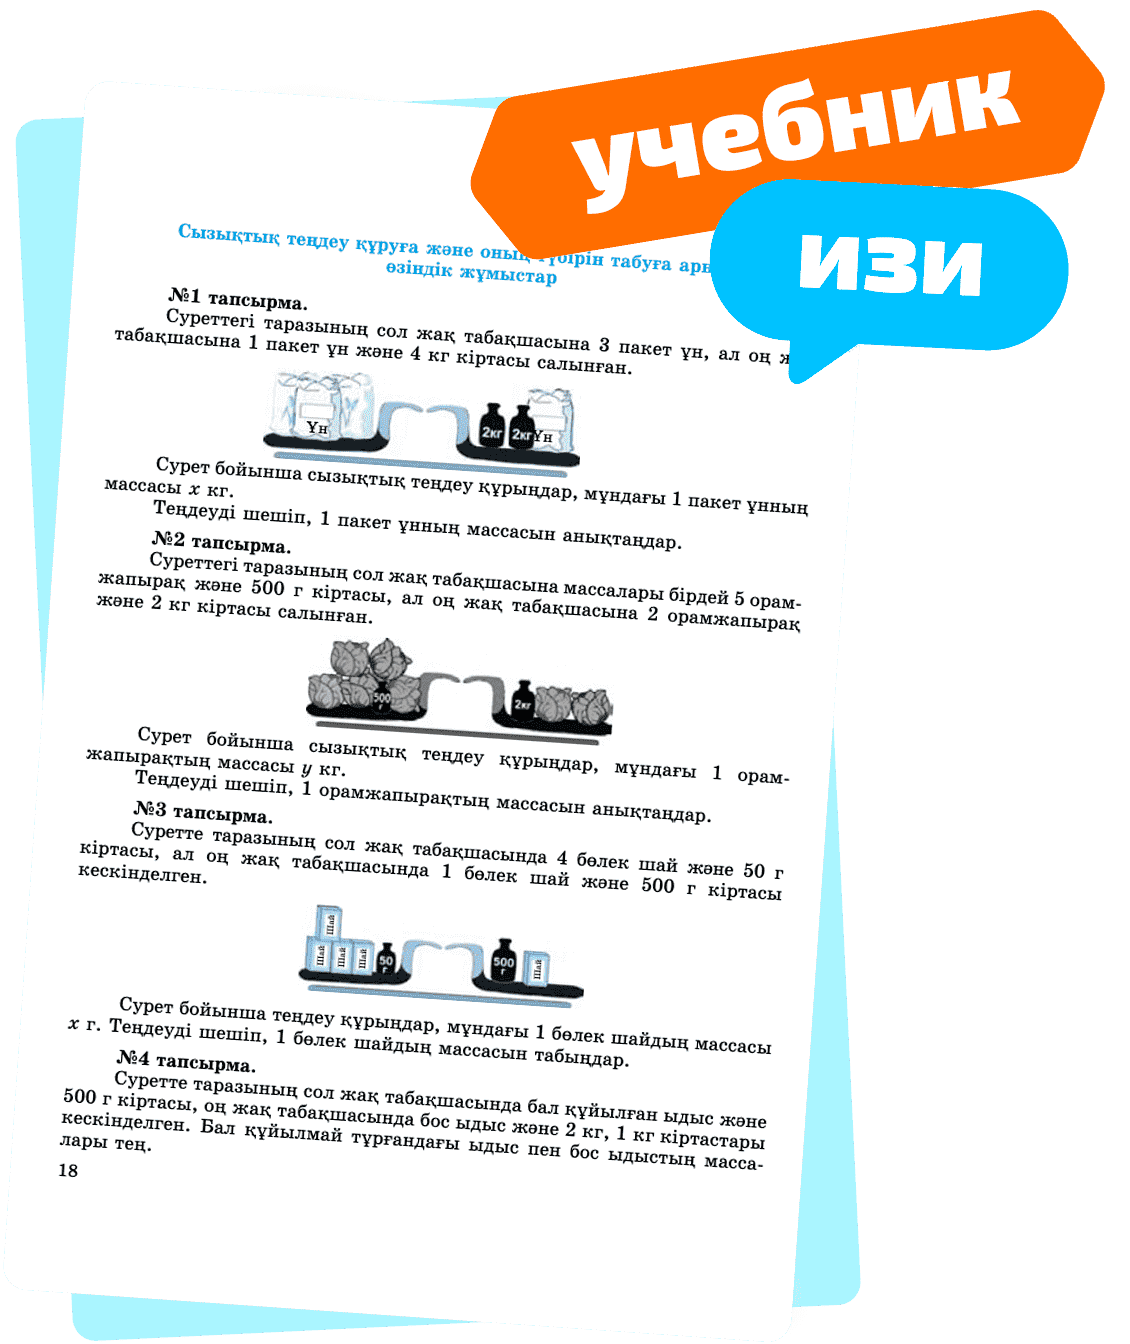 okulyk.com - электронные учебники в pdf Казахстан